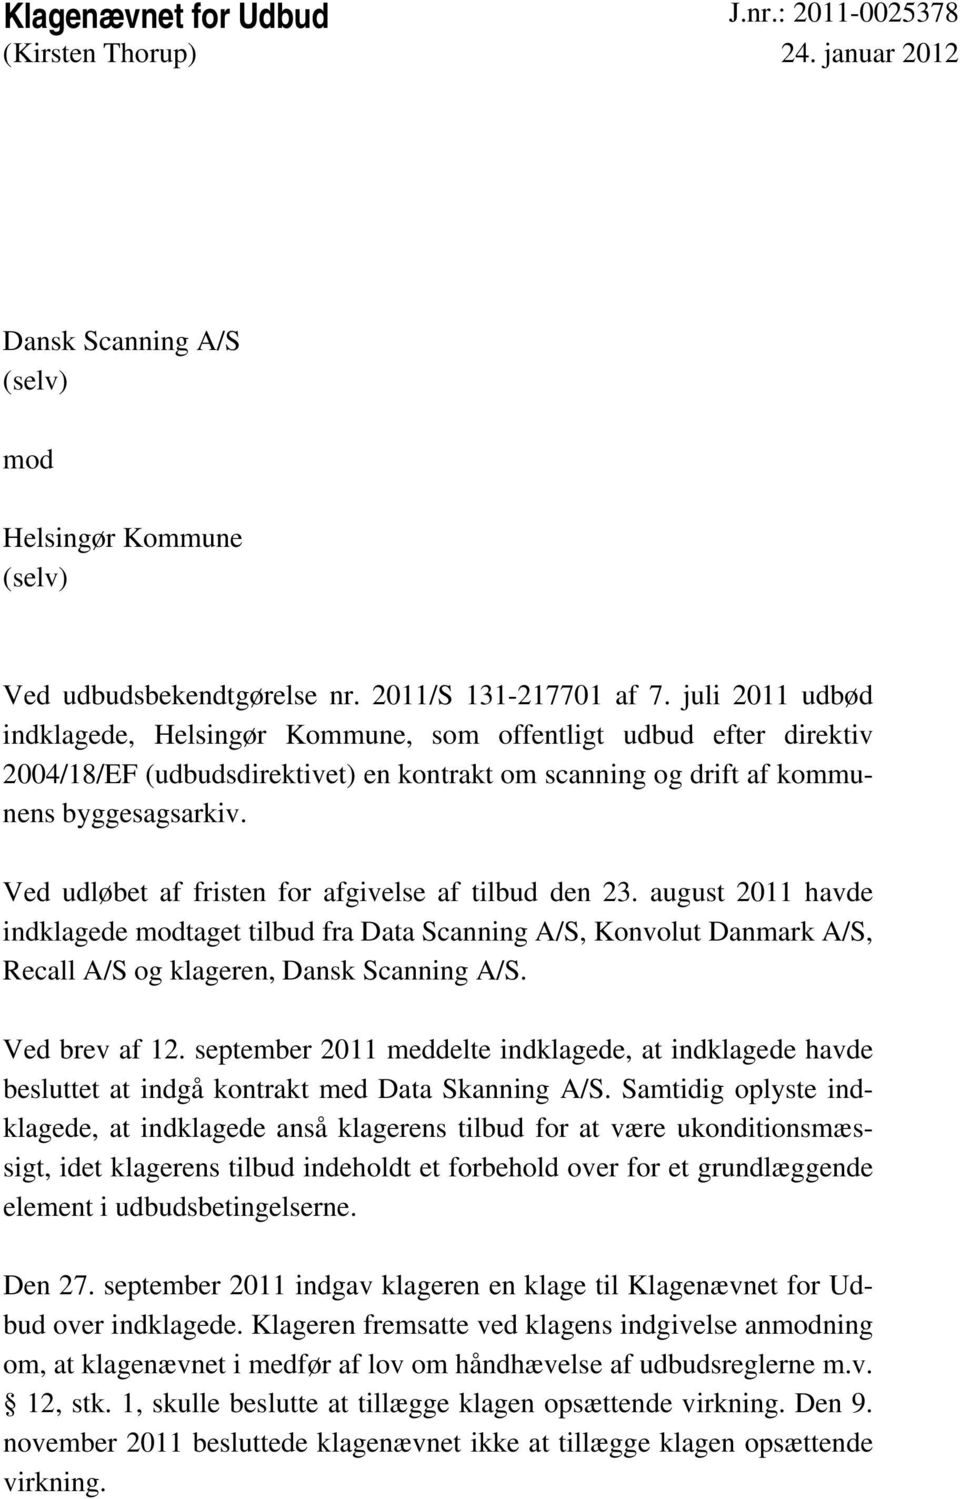 Ved udløbet af fristen for afgivelse af tilbud den 23. august 2011 havde indklagede modtaget tilbud fra Data Scanning A/S, Konvolut Danmark A/S, Recall A/S og klageren, Dansk Scanning A/S.